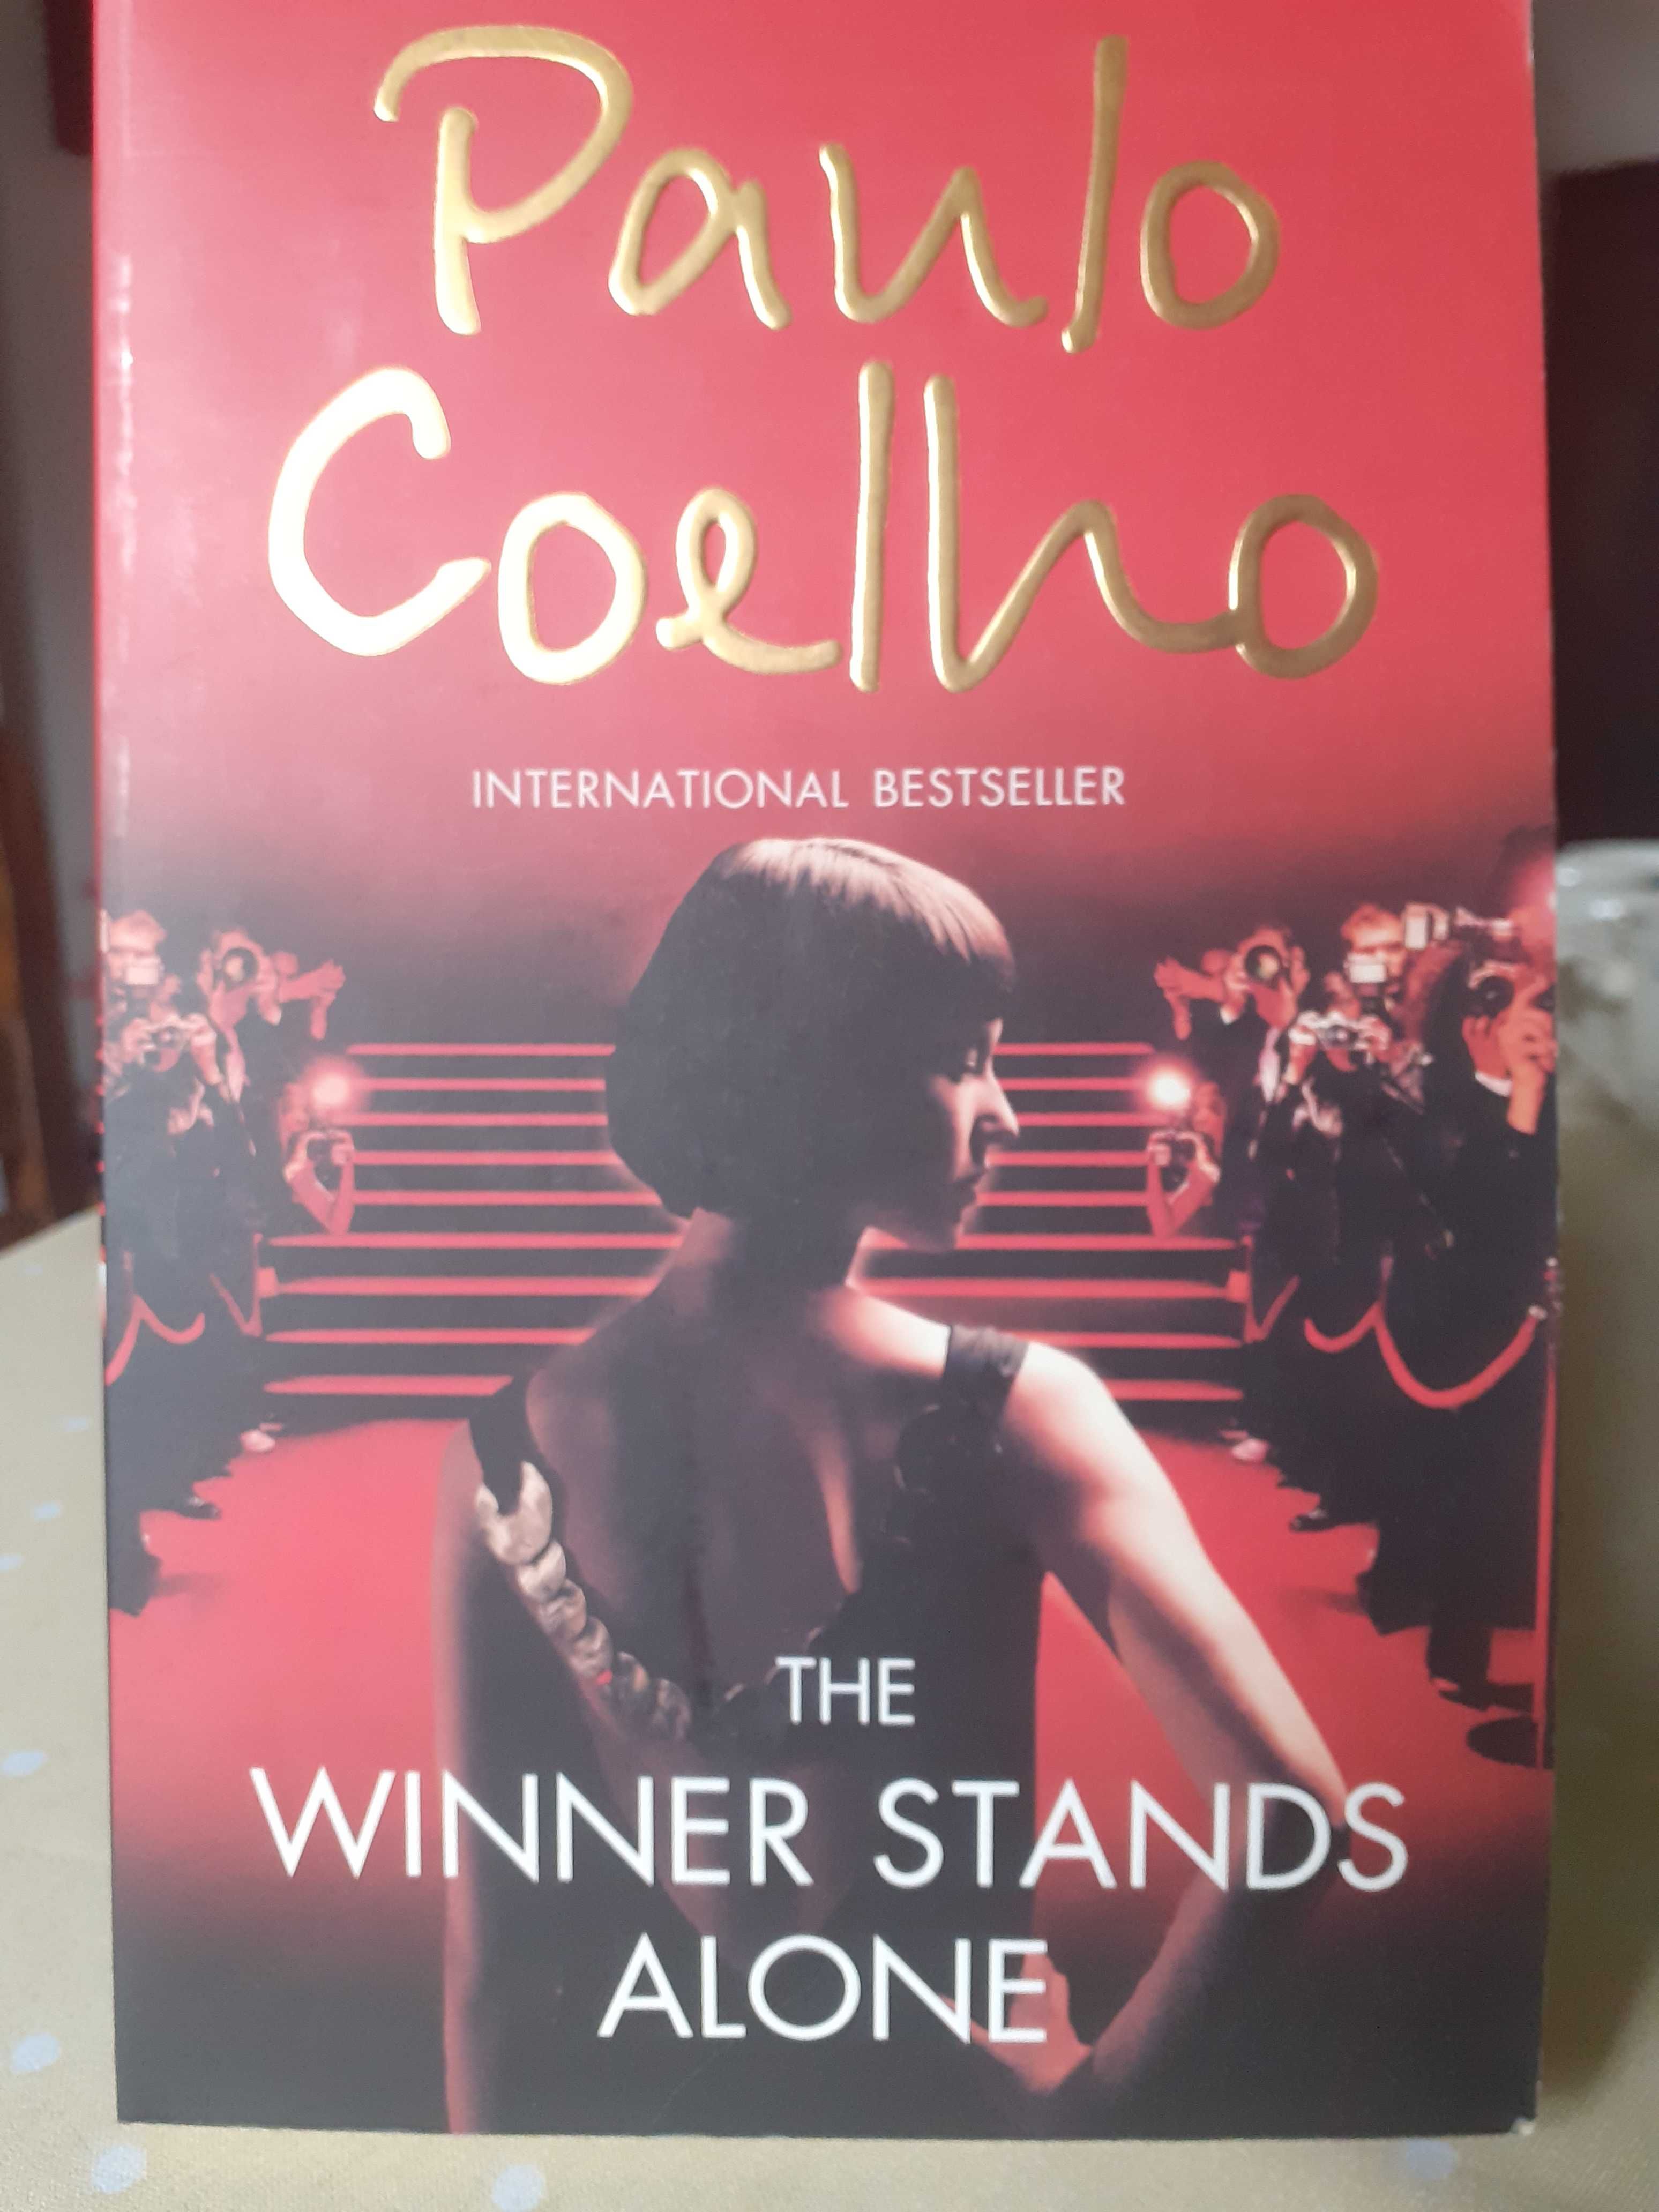 Paulo Coelho, The winner stands alone